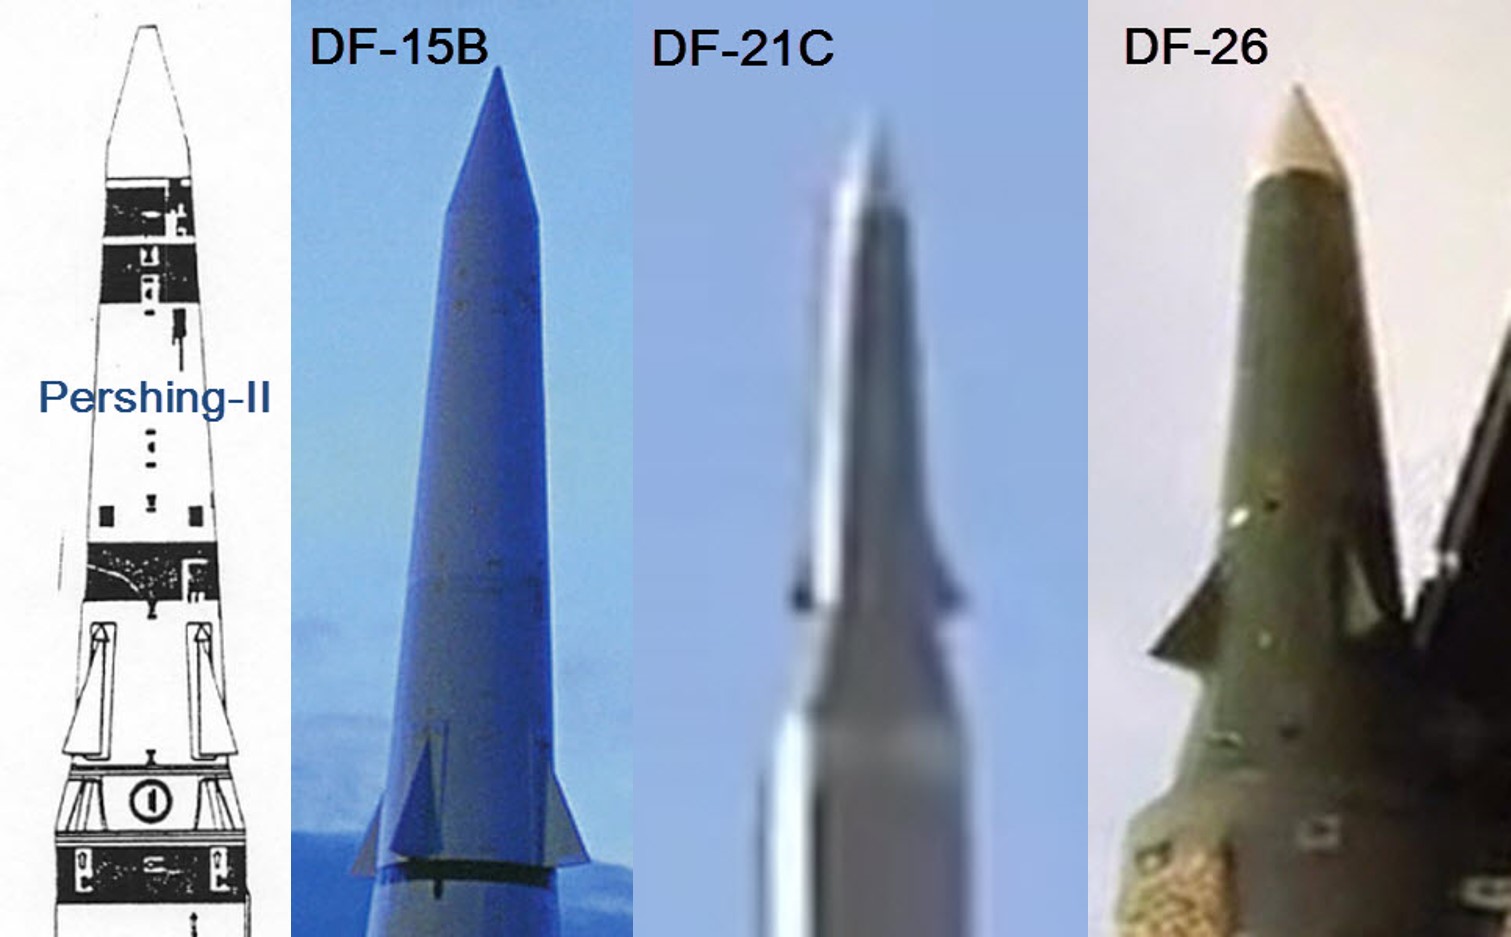 DF-26